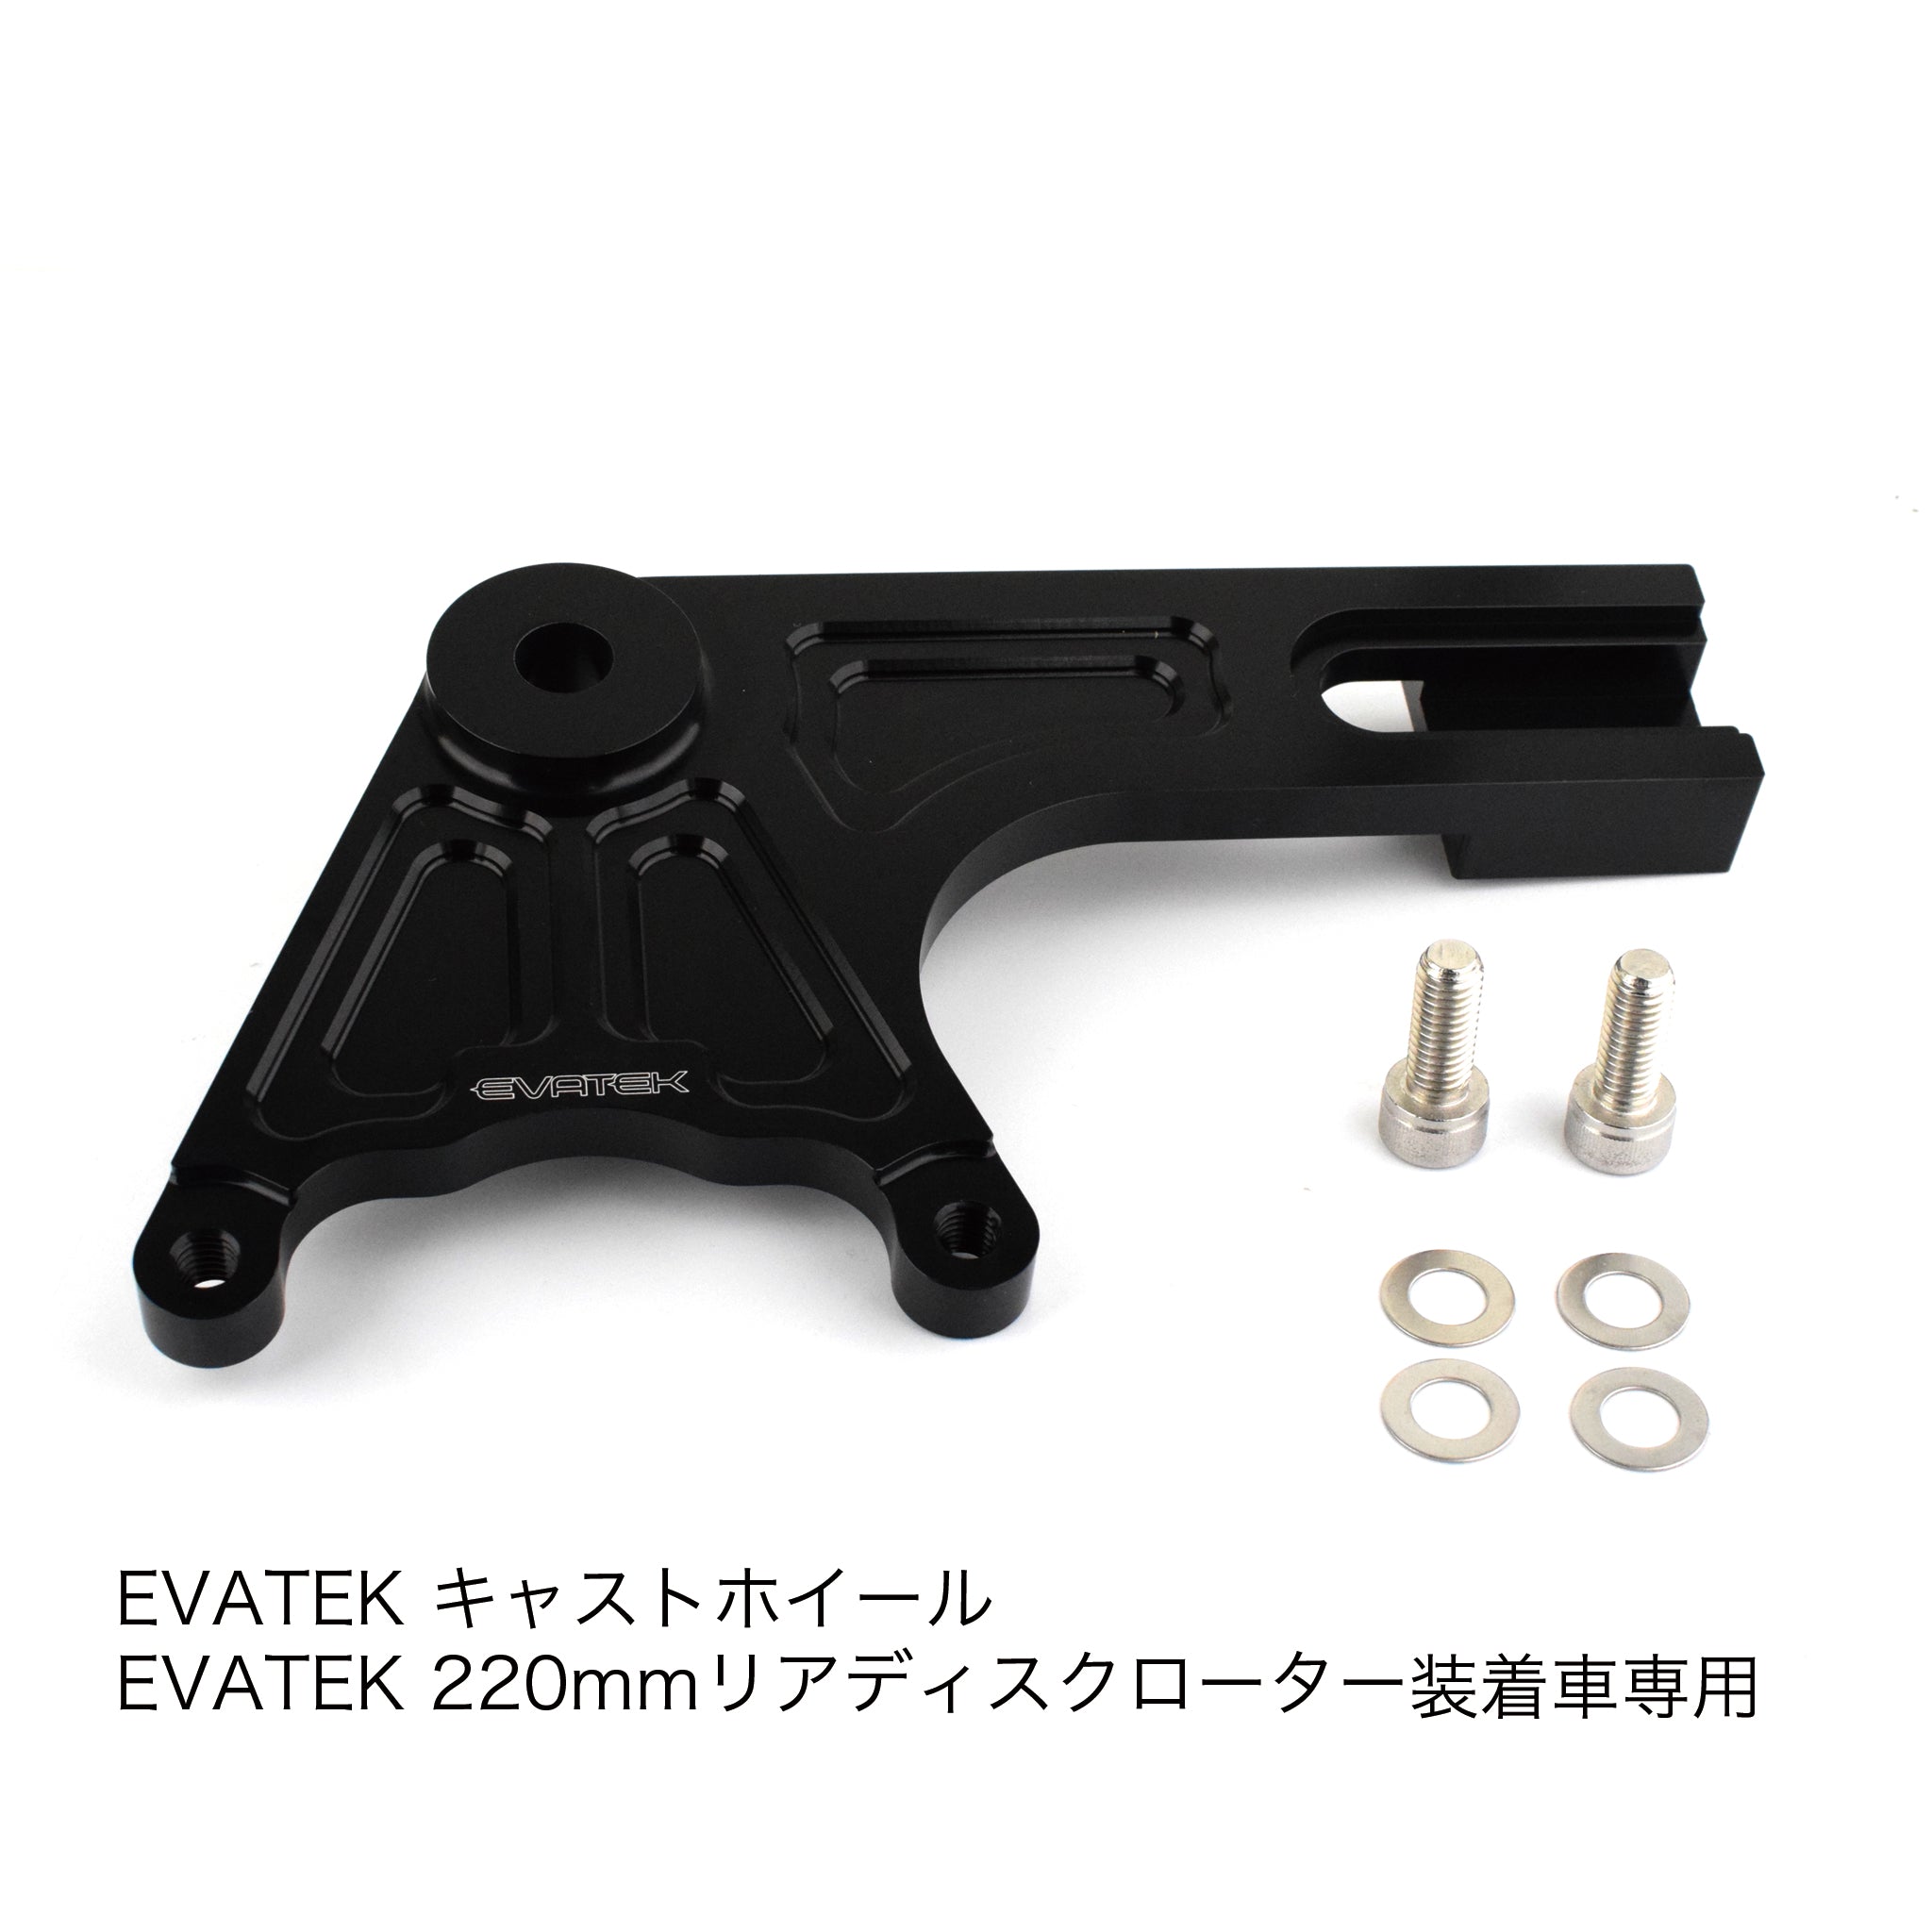 エヴァテック リア220mmディスク キャストホイール用 ブレンボリアキャリパーサポート EZパッケージ